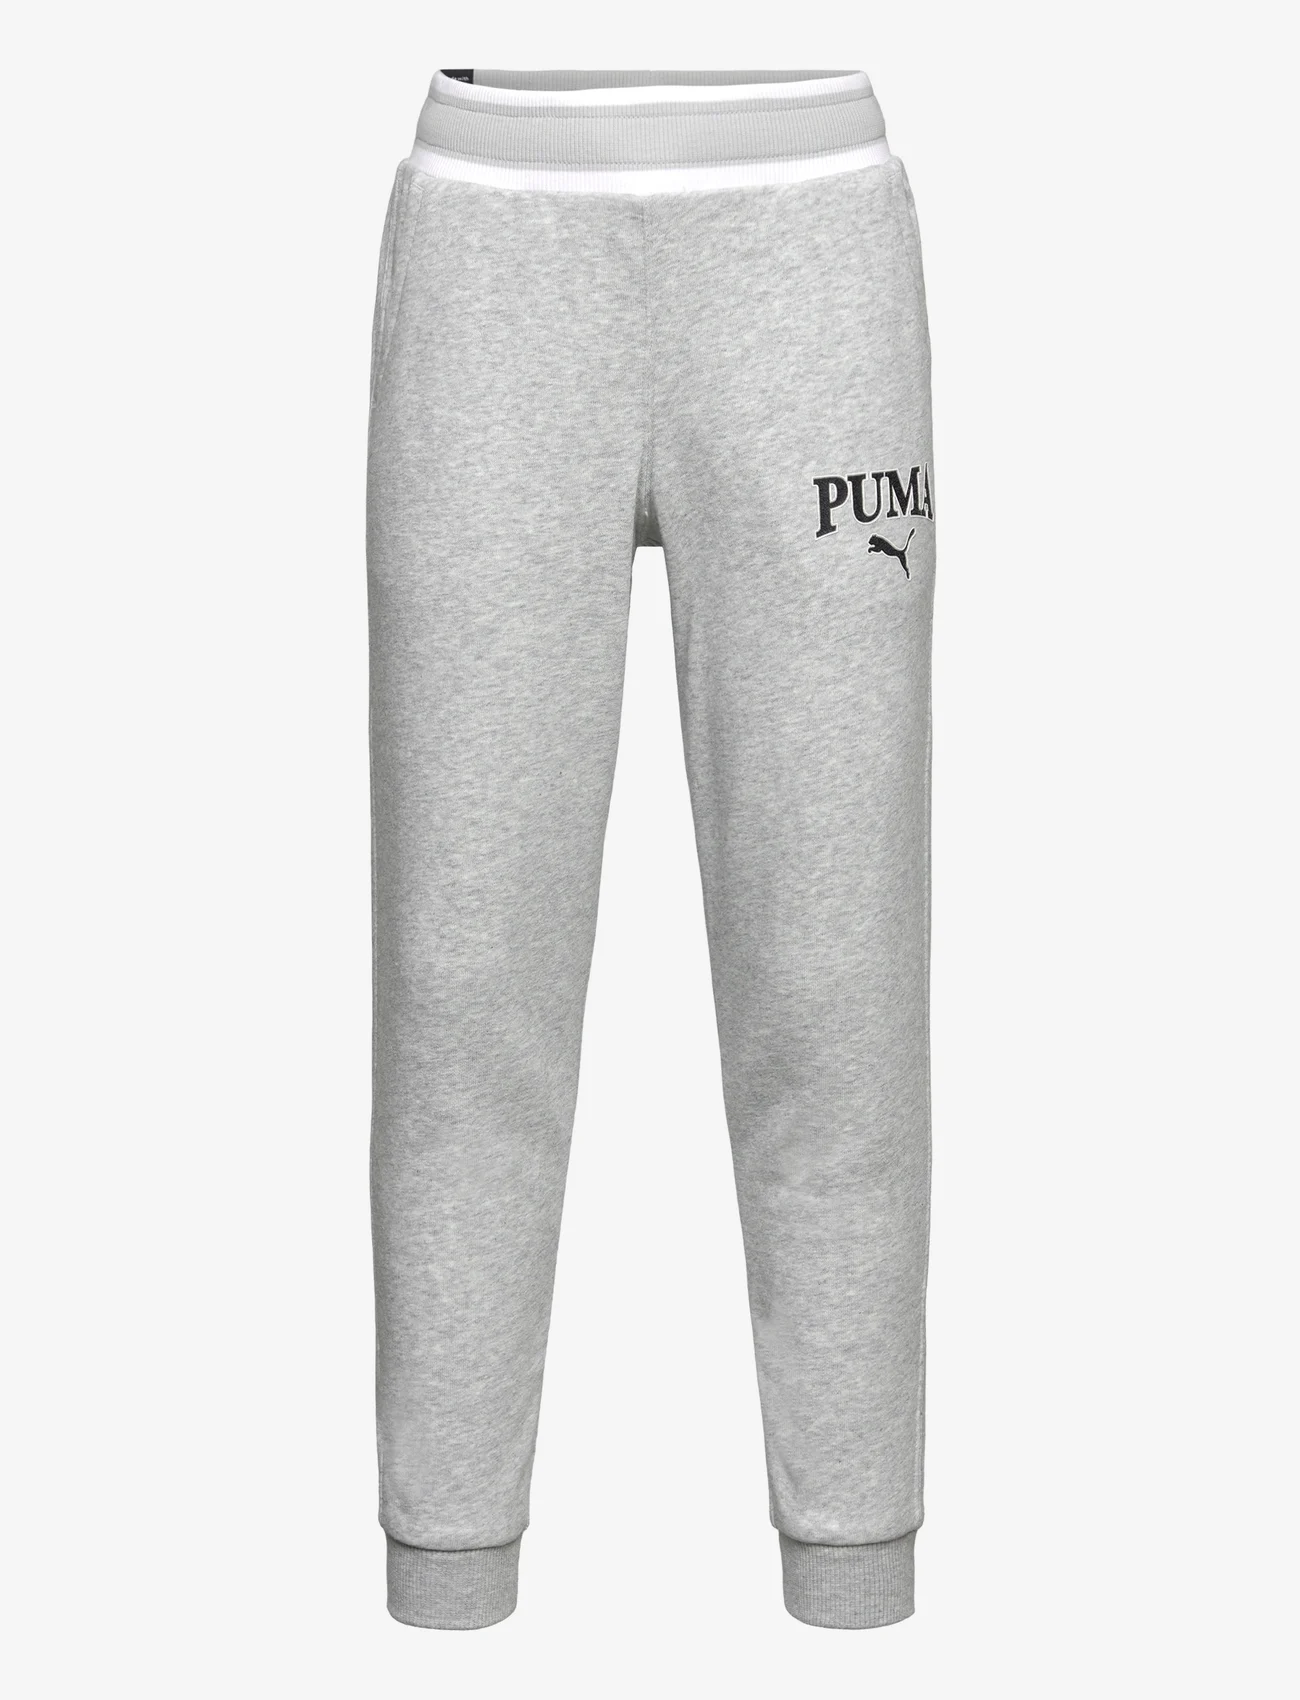 PUMA - PUMA SQUAD Sweatpants TR cl B - trainingsbroek - light gray heather - 0